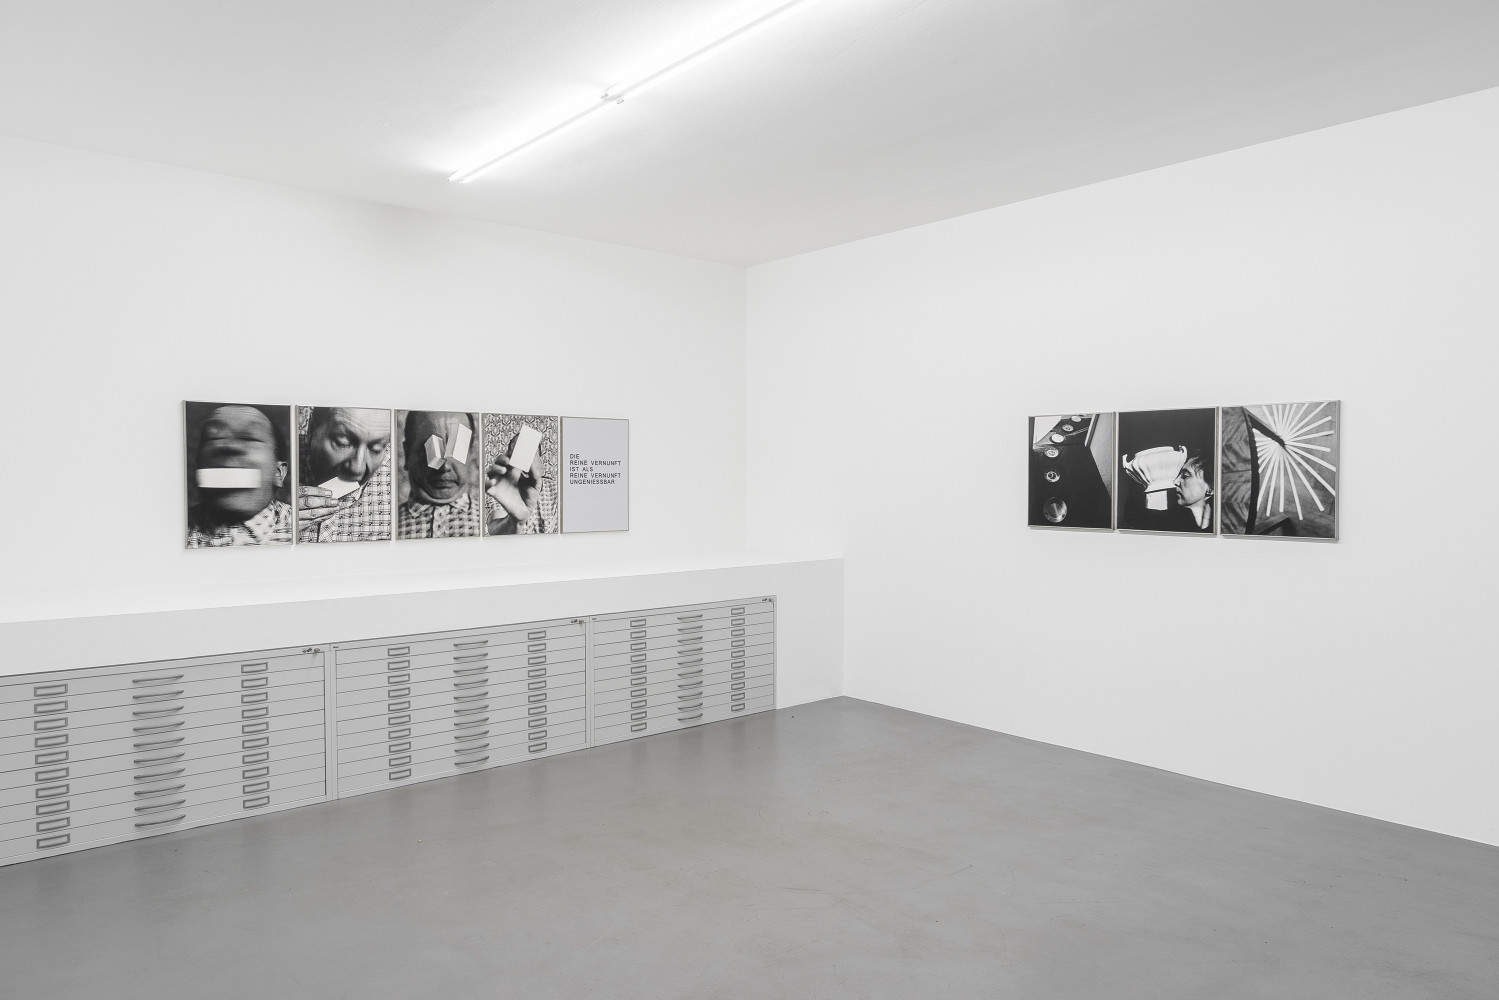 Anna & Bernhard Blume, ‘Spiritistische Sequenzen ’, Installation view, Buchmann Box, 2016